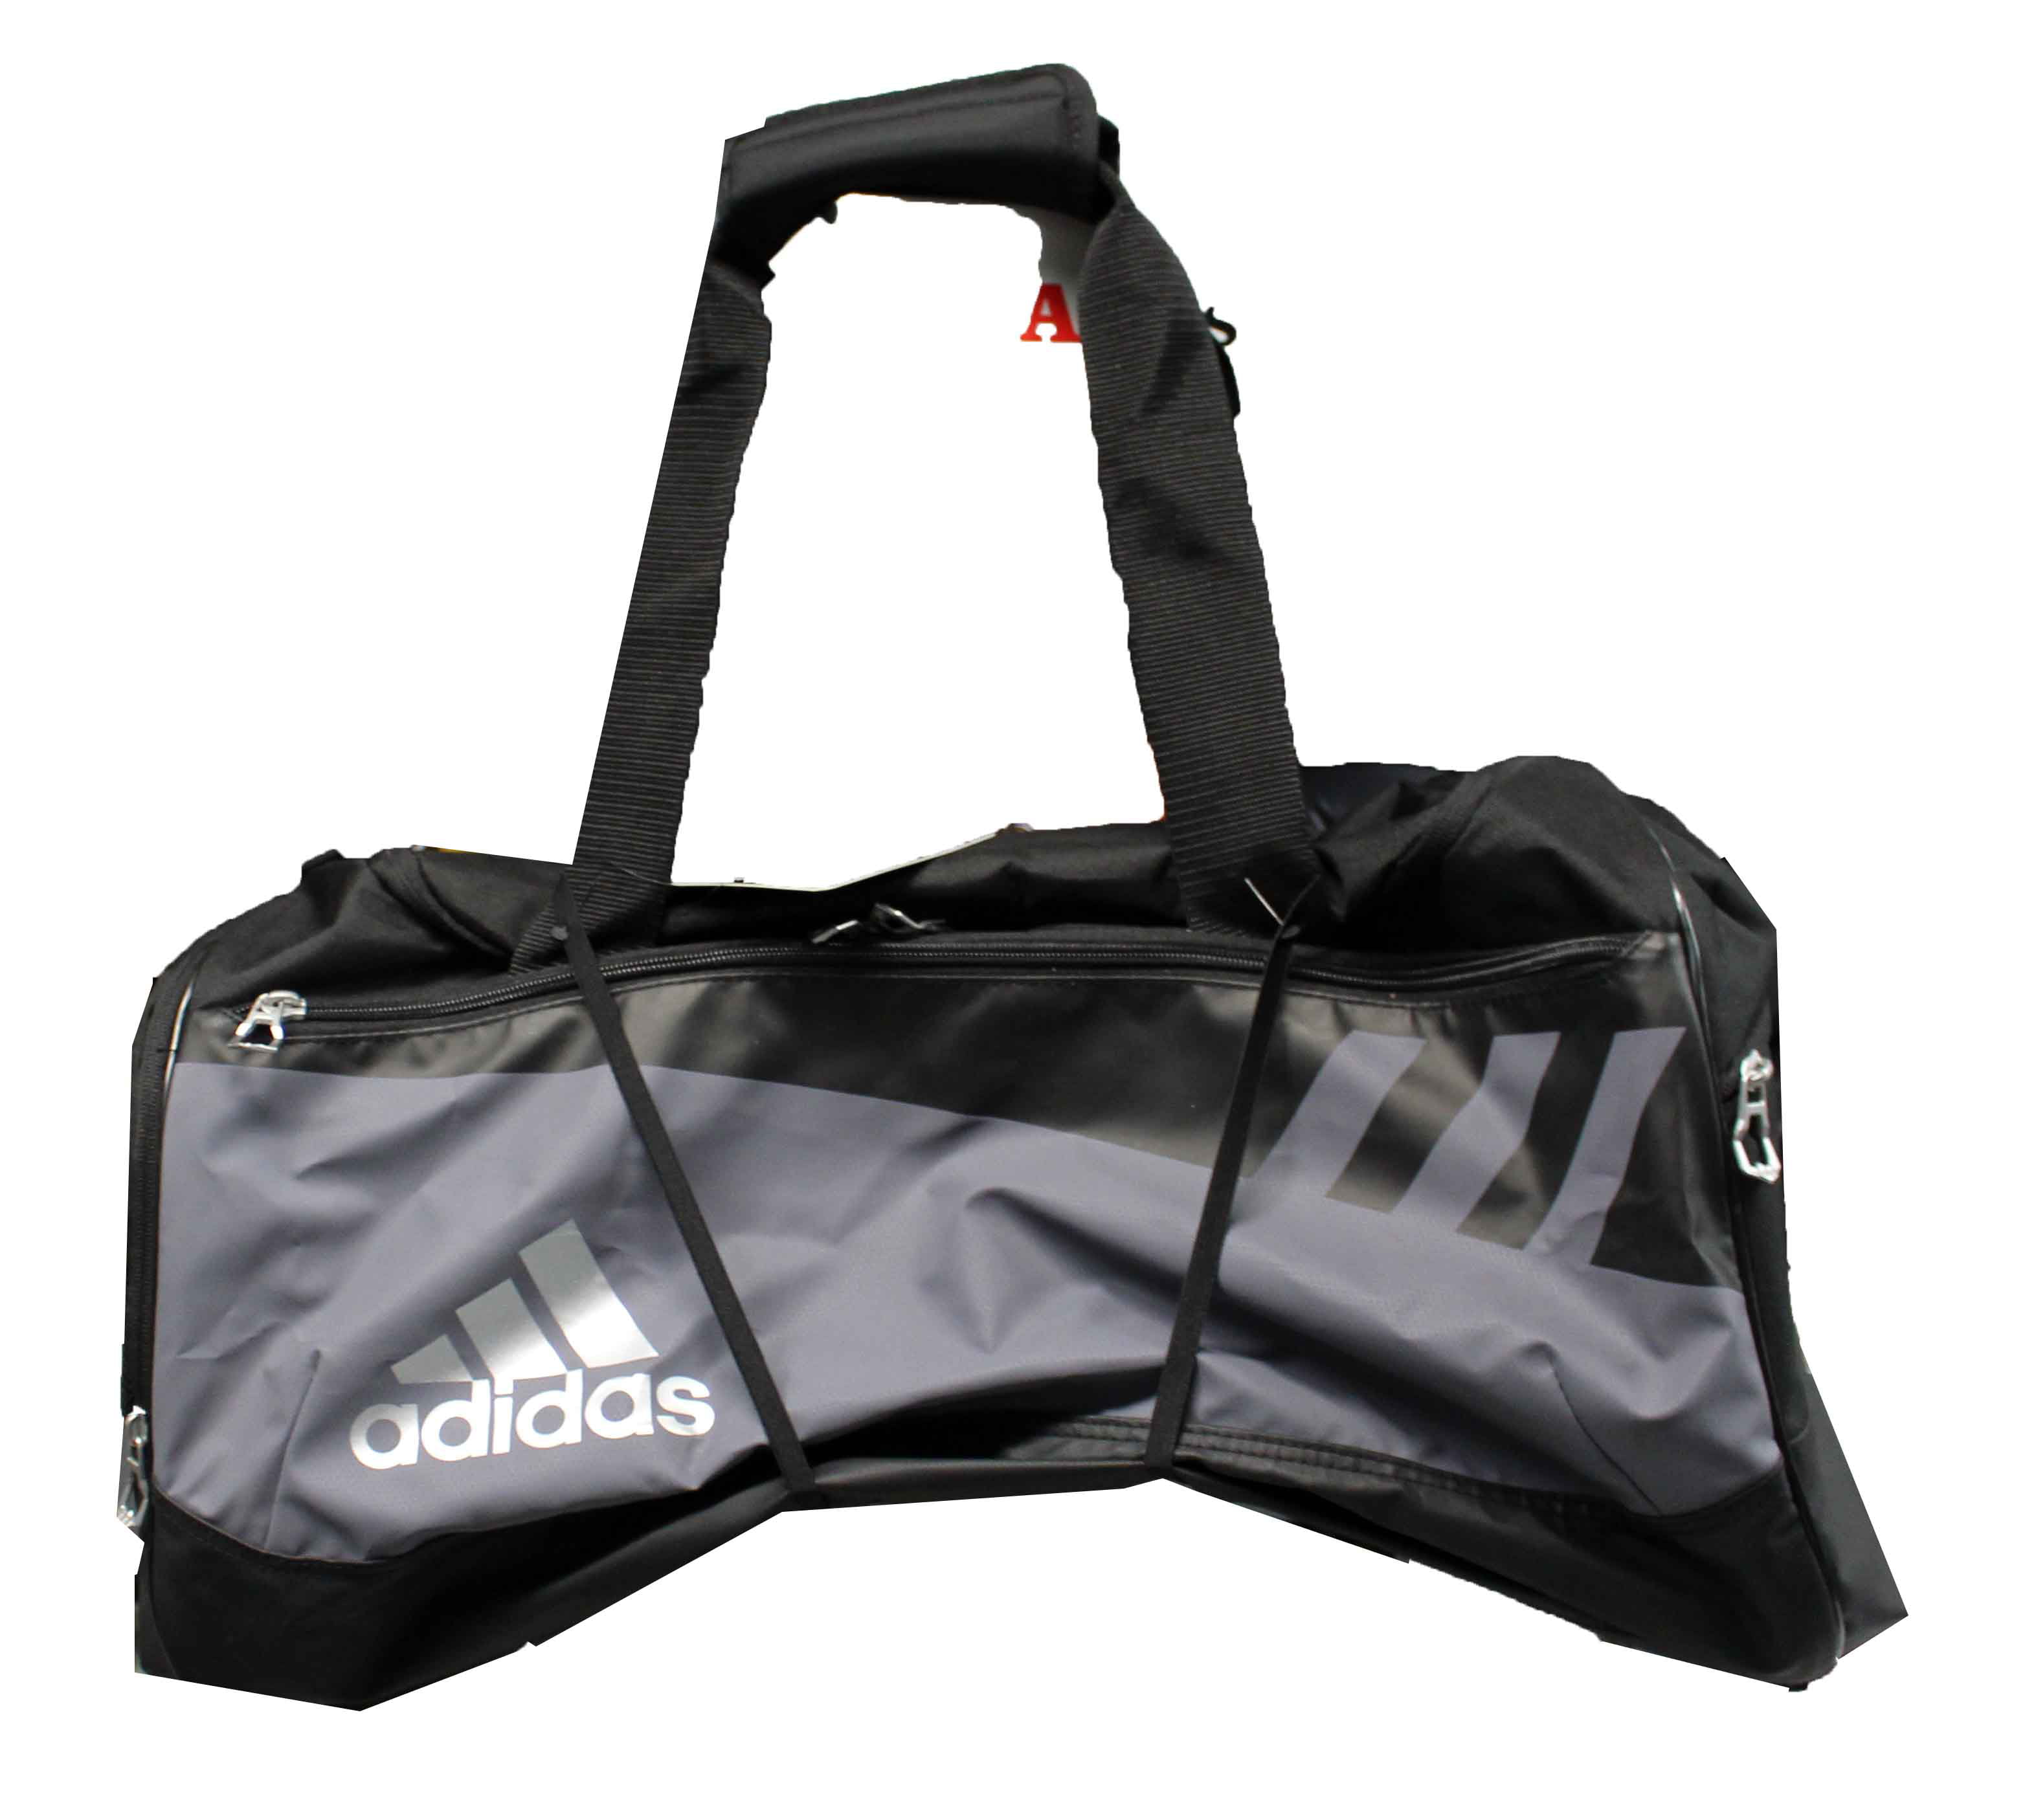 adidas team issue medium duffel bag